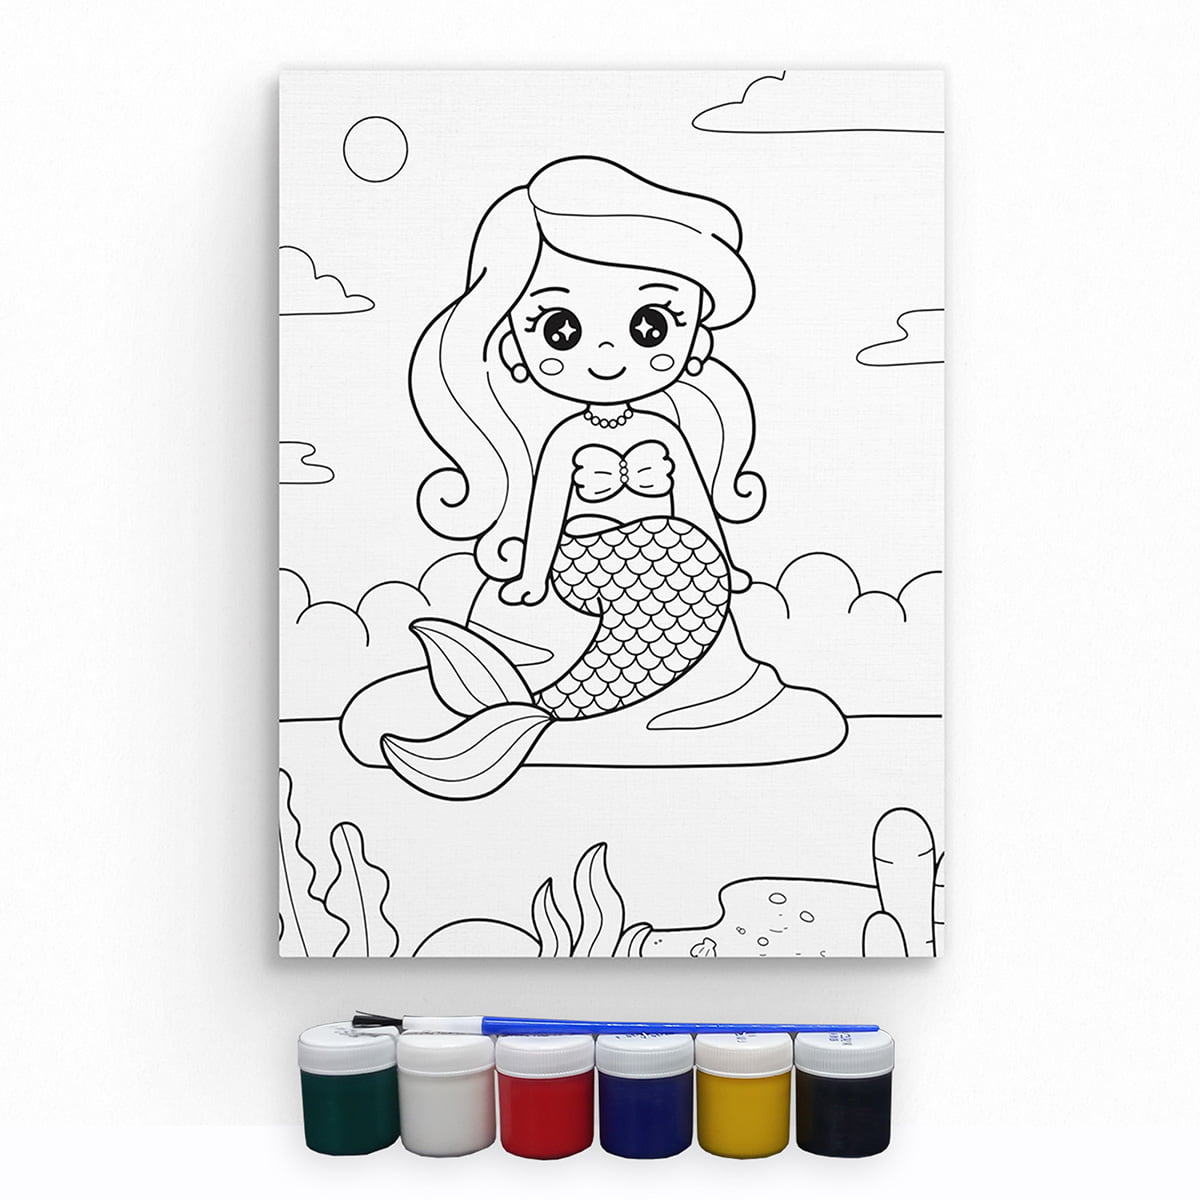 Tela Desenho Pintar com Tintas e Decorar com Stickers - Princesa Sereia -  Artizi - Pintar por numeros